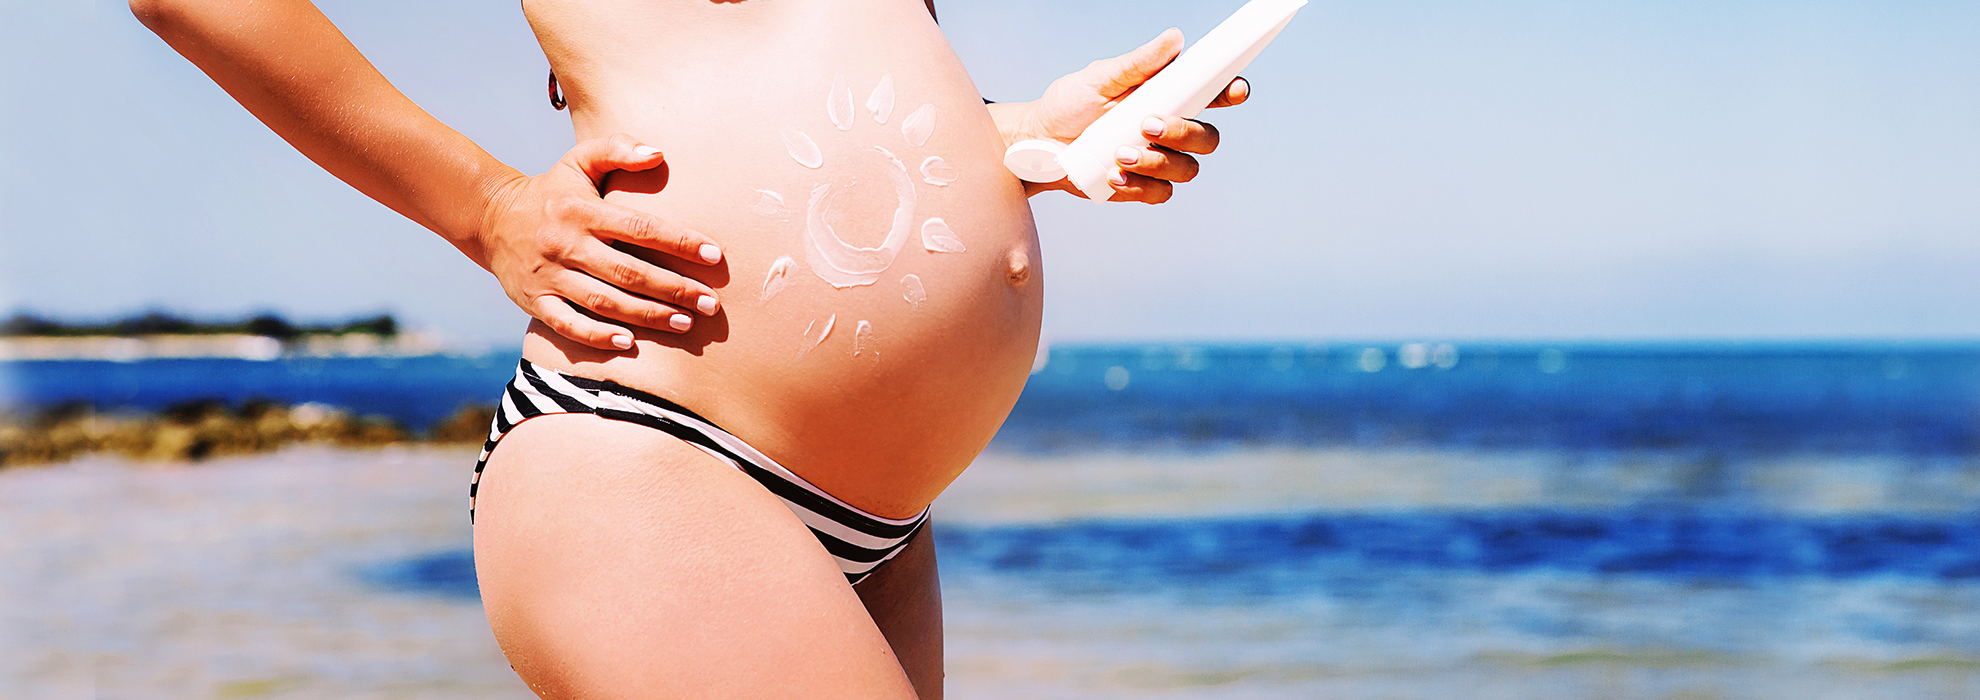 Protezione solare in gravidanza. I consigli utili.